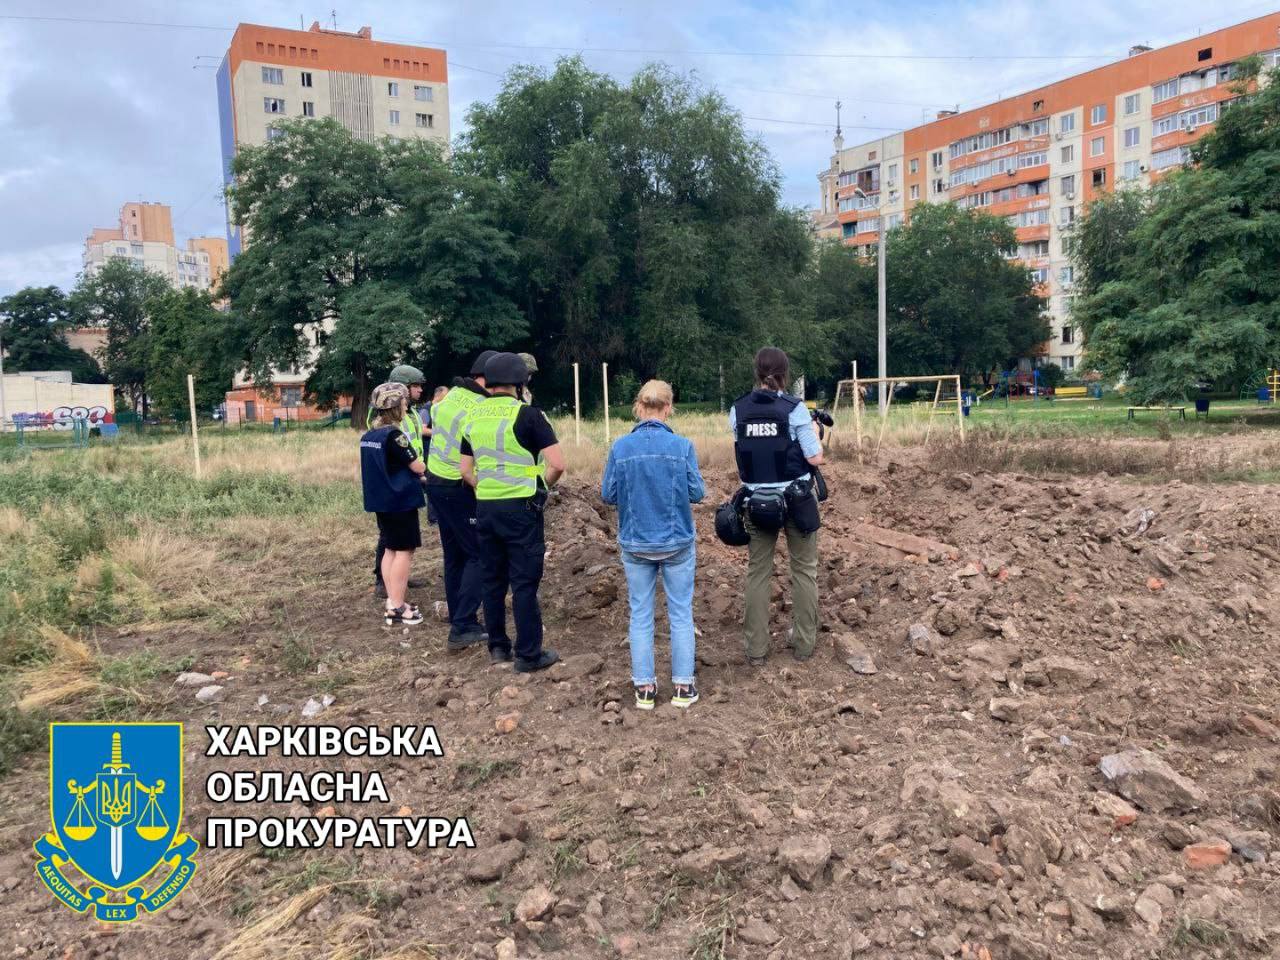 Прокуратура начала расследование по факту ракетного удару по Харькову 26 июля 